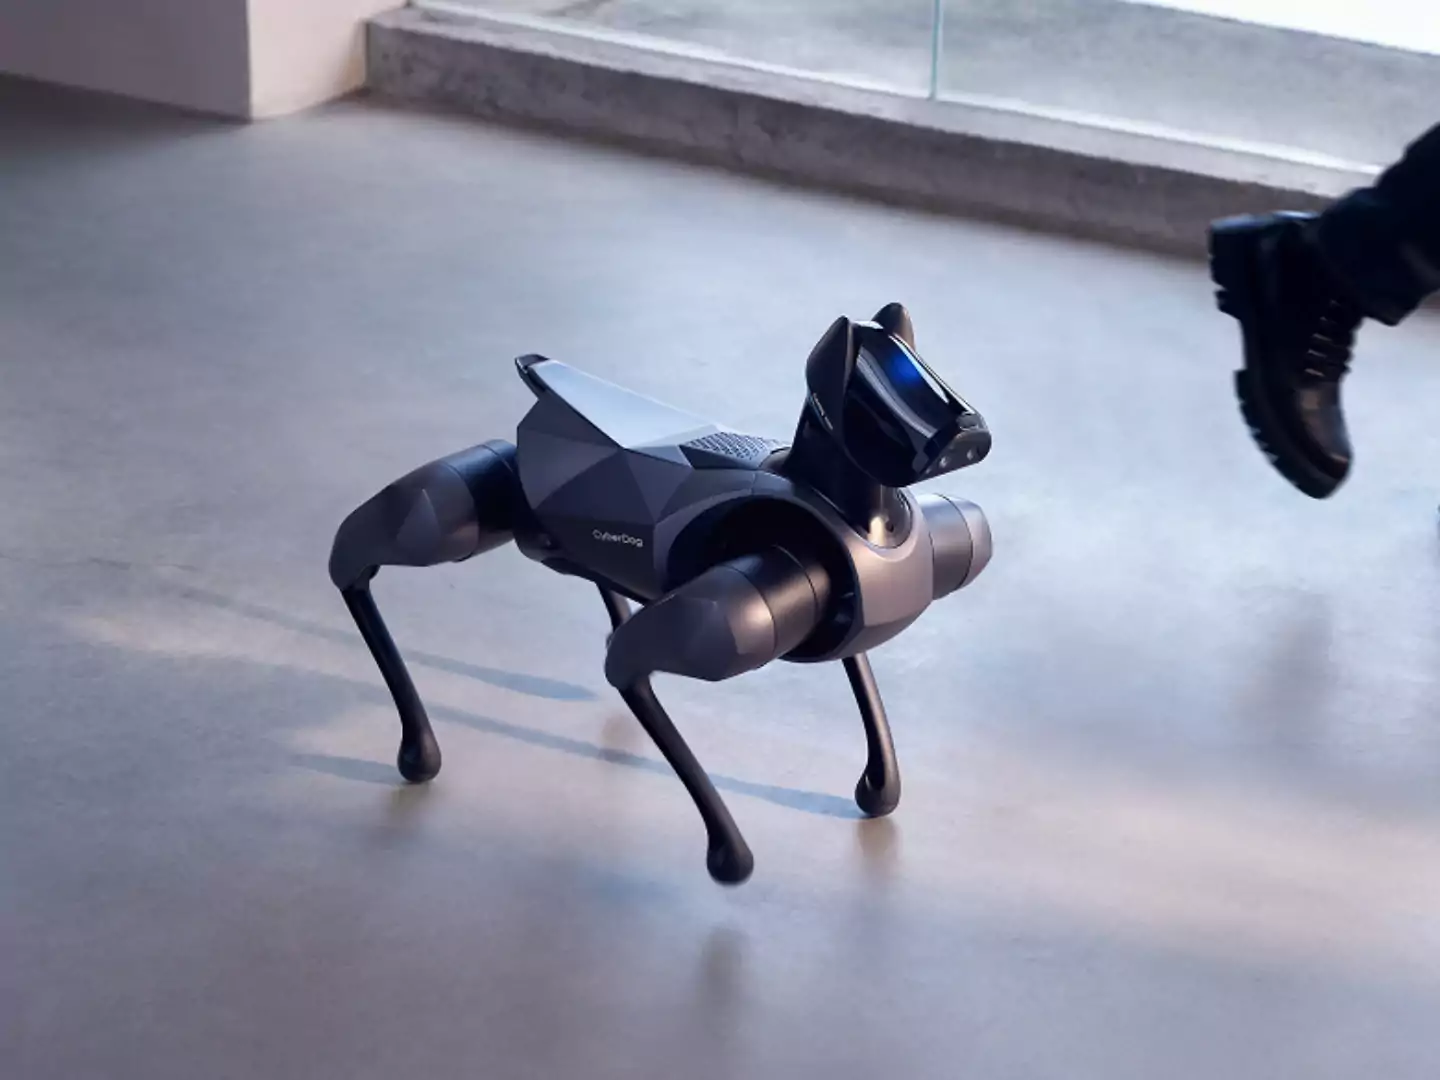 شیائومی از دومین نسل سگ رباتیک خود با نام CyberDog 2 رونمایی کرد
